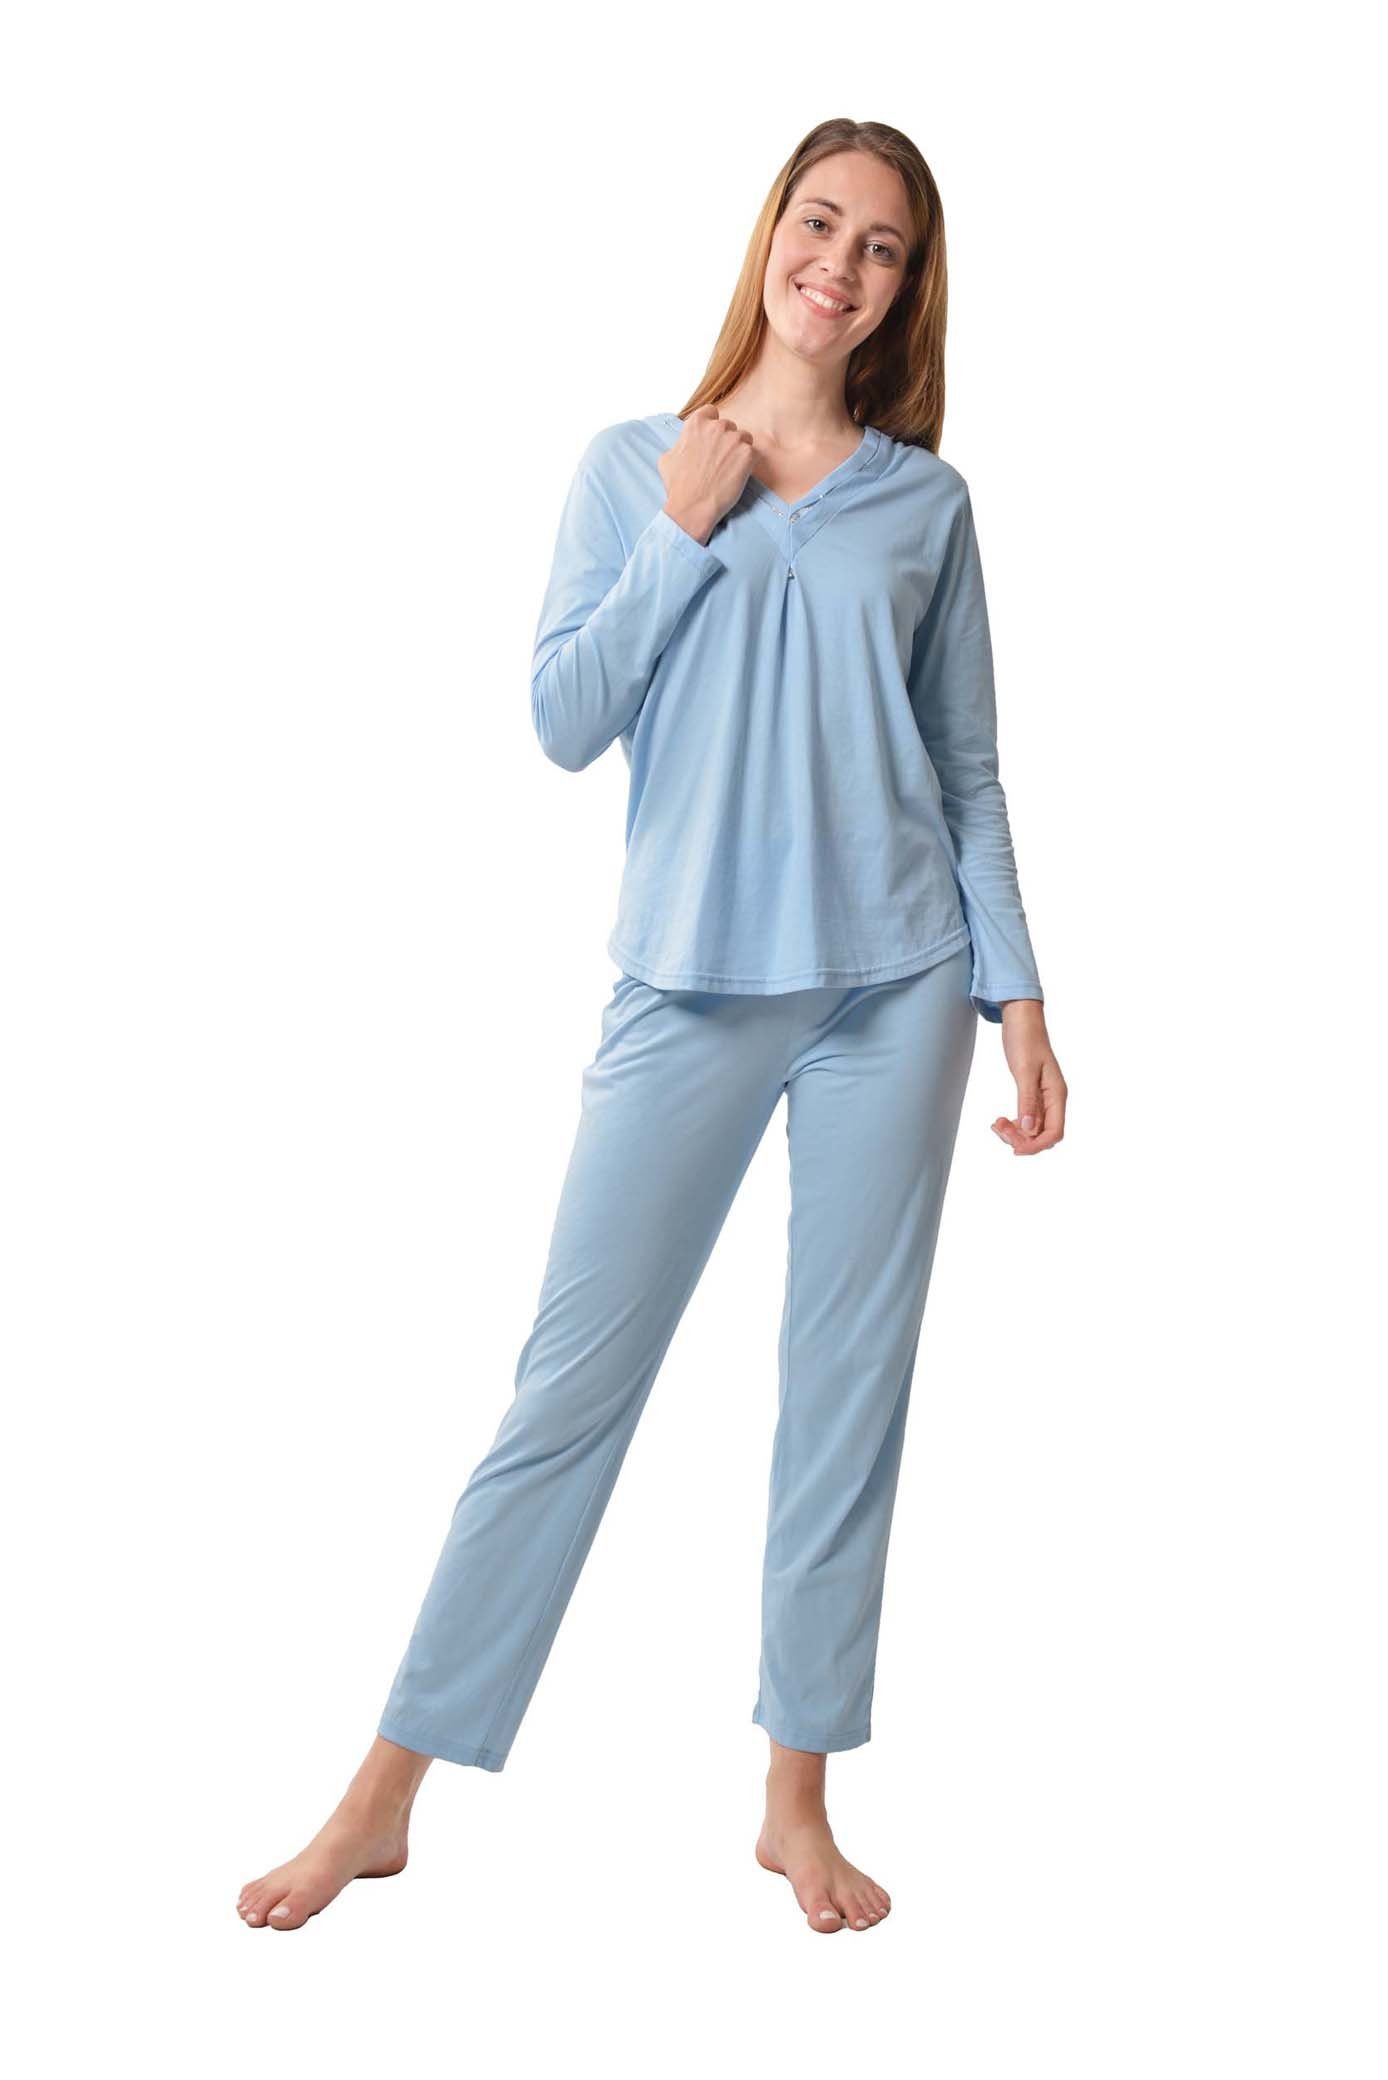 Damen Nachtwäsche Schlafanzug langer Pyjama 2 teilig Baumwolle 